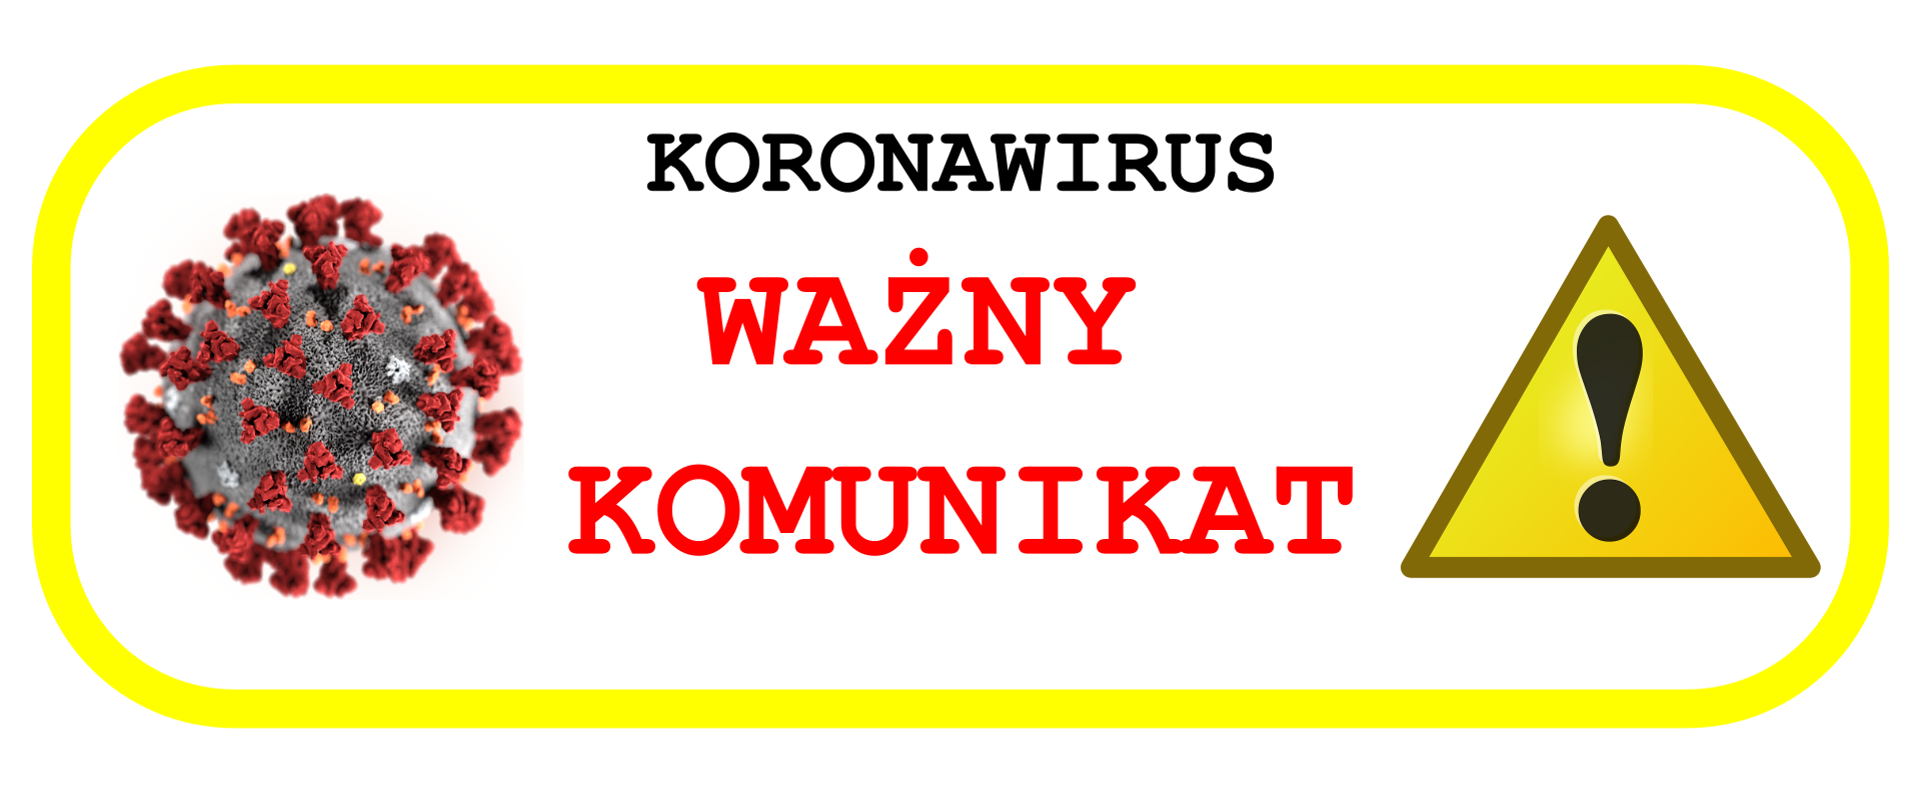 Baner nagłówkowy komunikatu. Po lewej ikona koronowirusa, po prawej piktogram znaku ostrzegawczego na środku napisz KORONAWIRUS i WAŻNY KOMUNIKAT